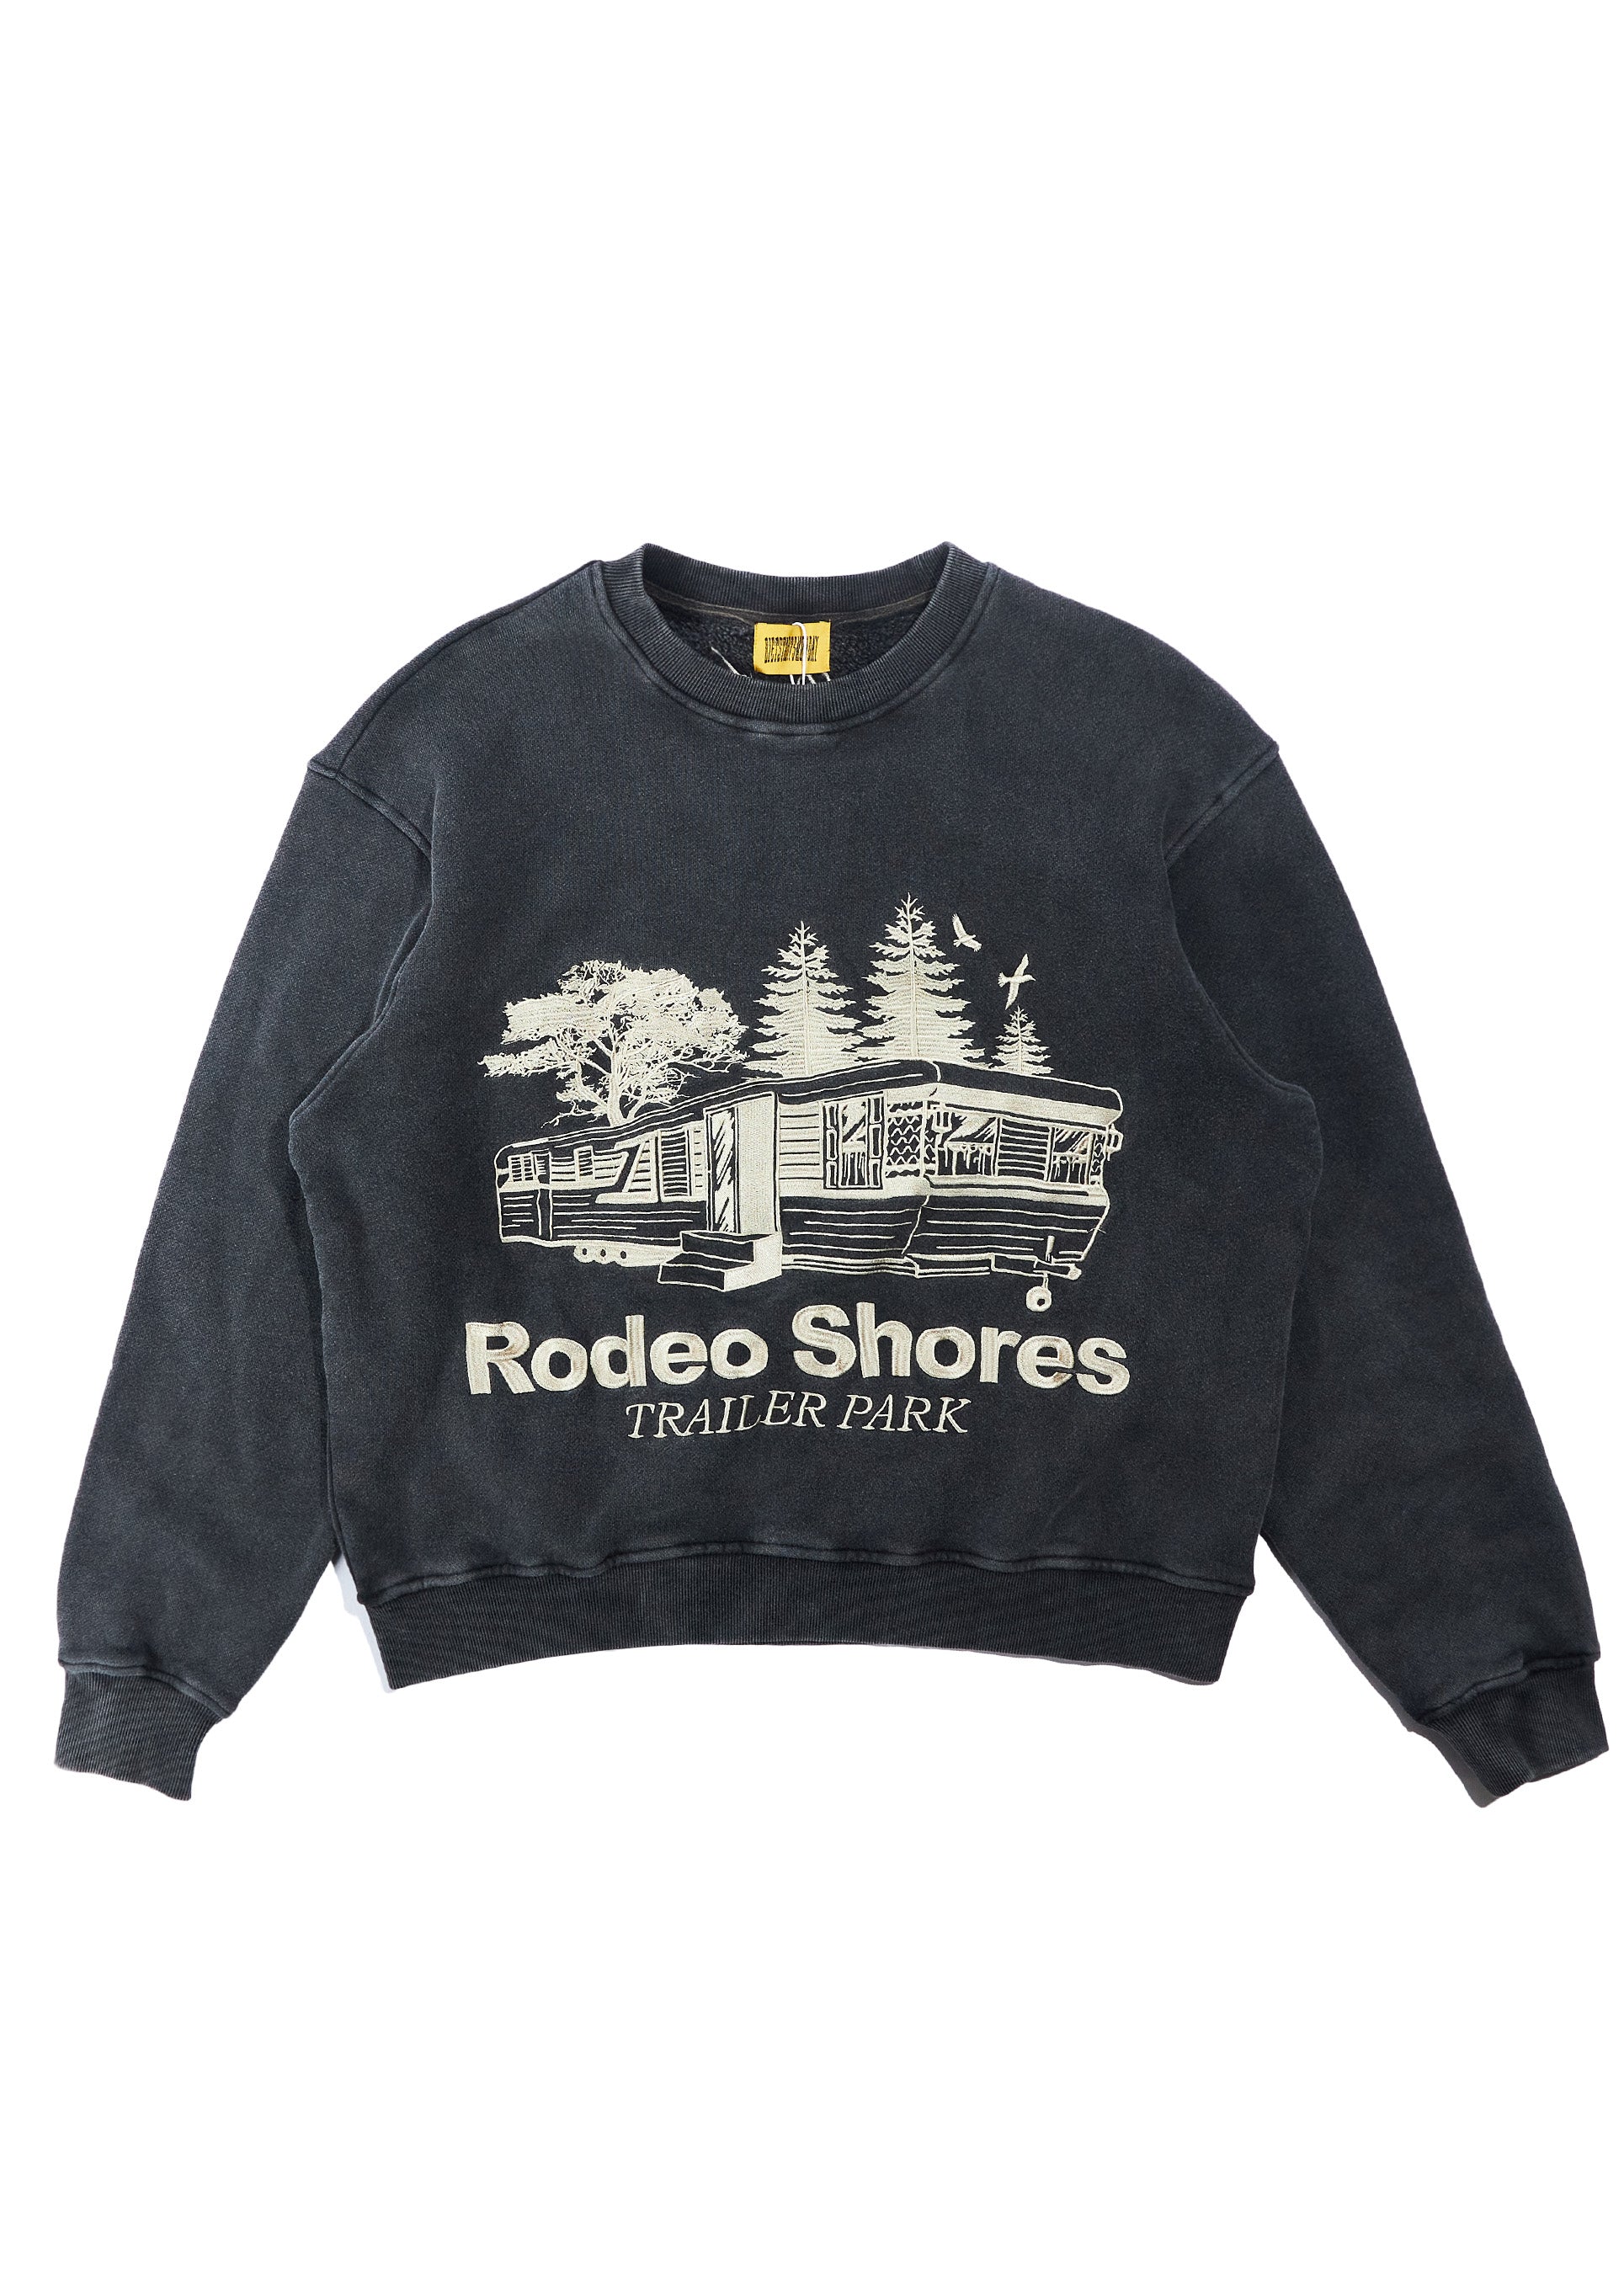 Rodeo Shores Crewneck - Vintage Black